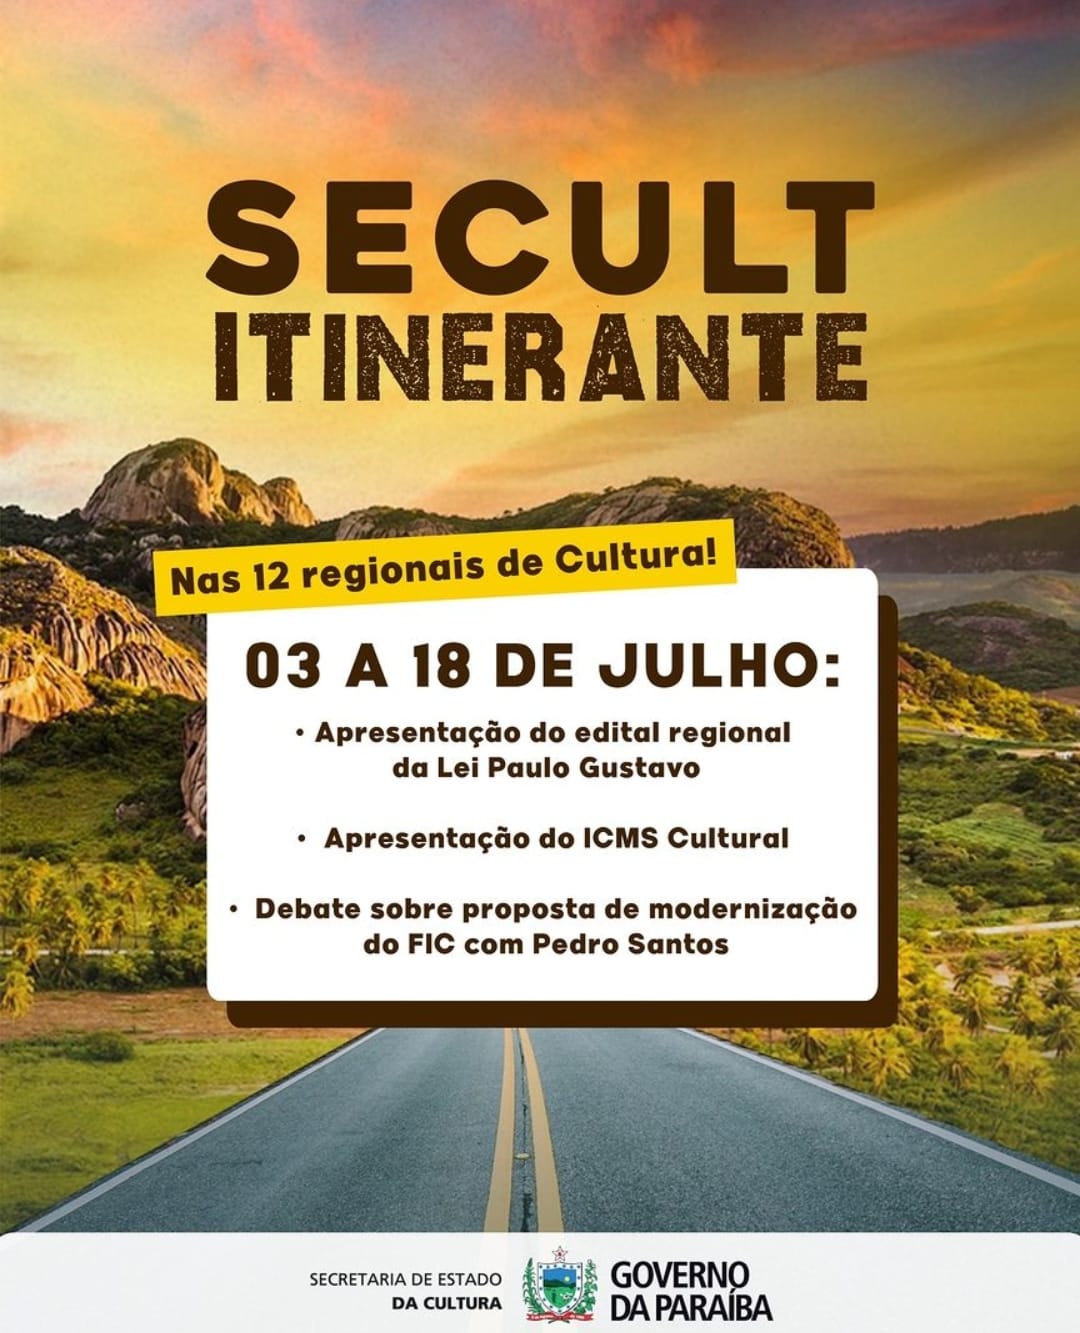 Secult-Itinerante CULTURA: Monteiro recebe caravana da SECULT Itinerante na próxima terça-feira (11)